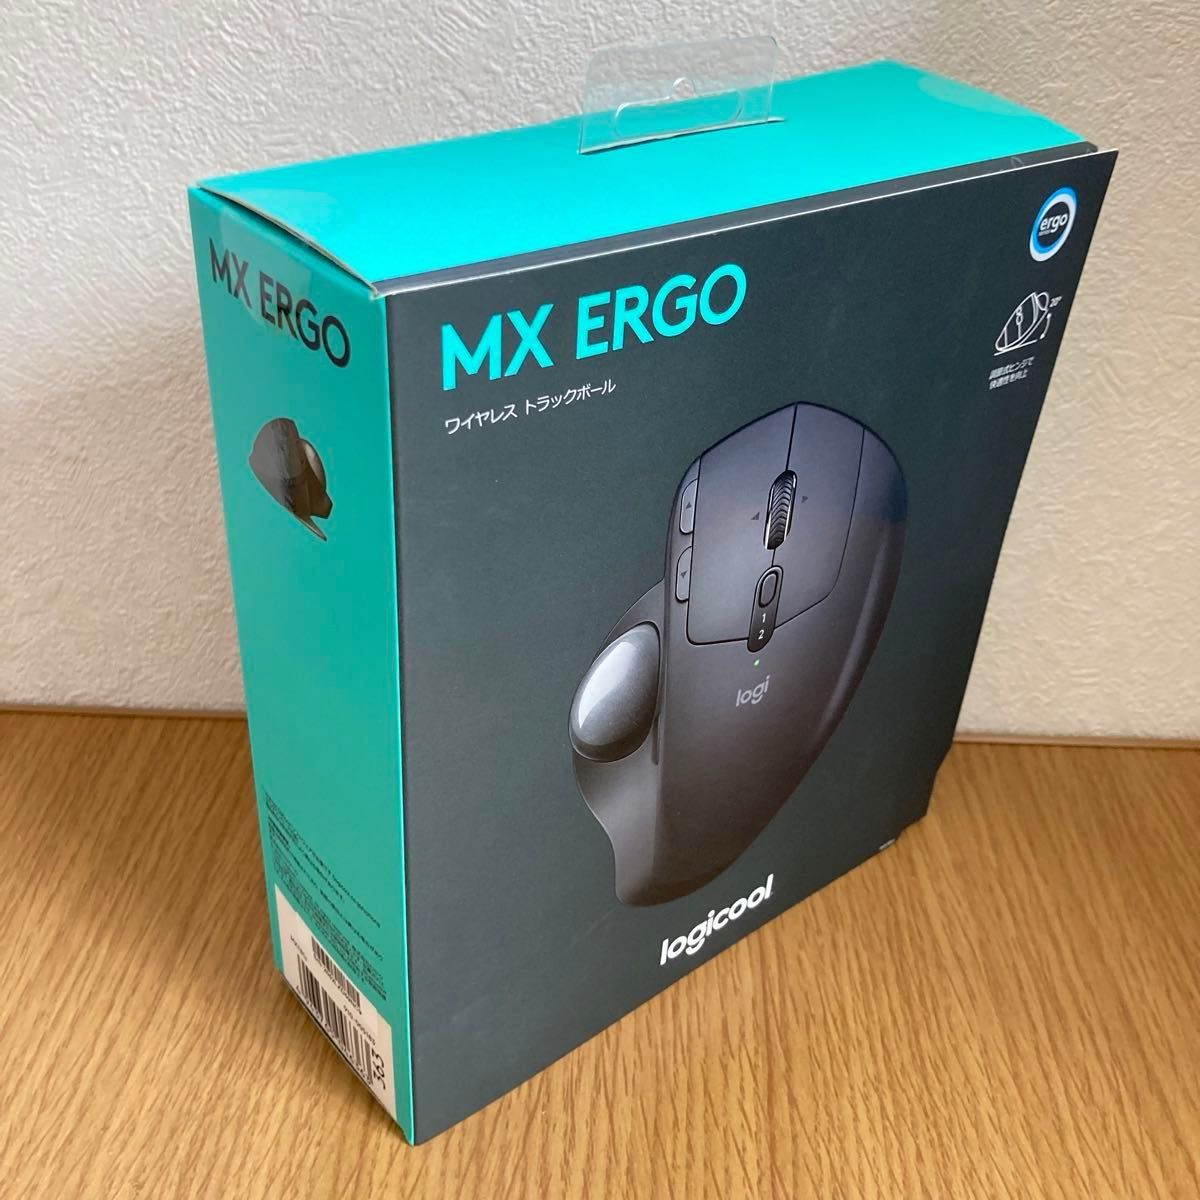 Logicoolロジクール MX ERGO Unifying Bluetooth MXTB1s ワイヤレスマウス トラックボール